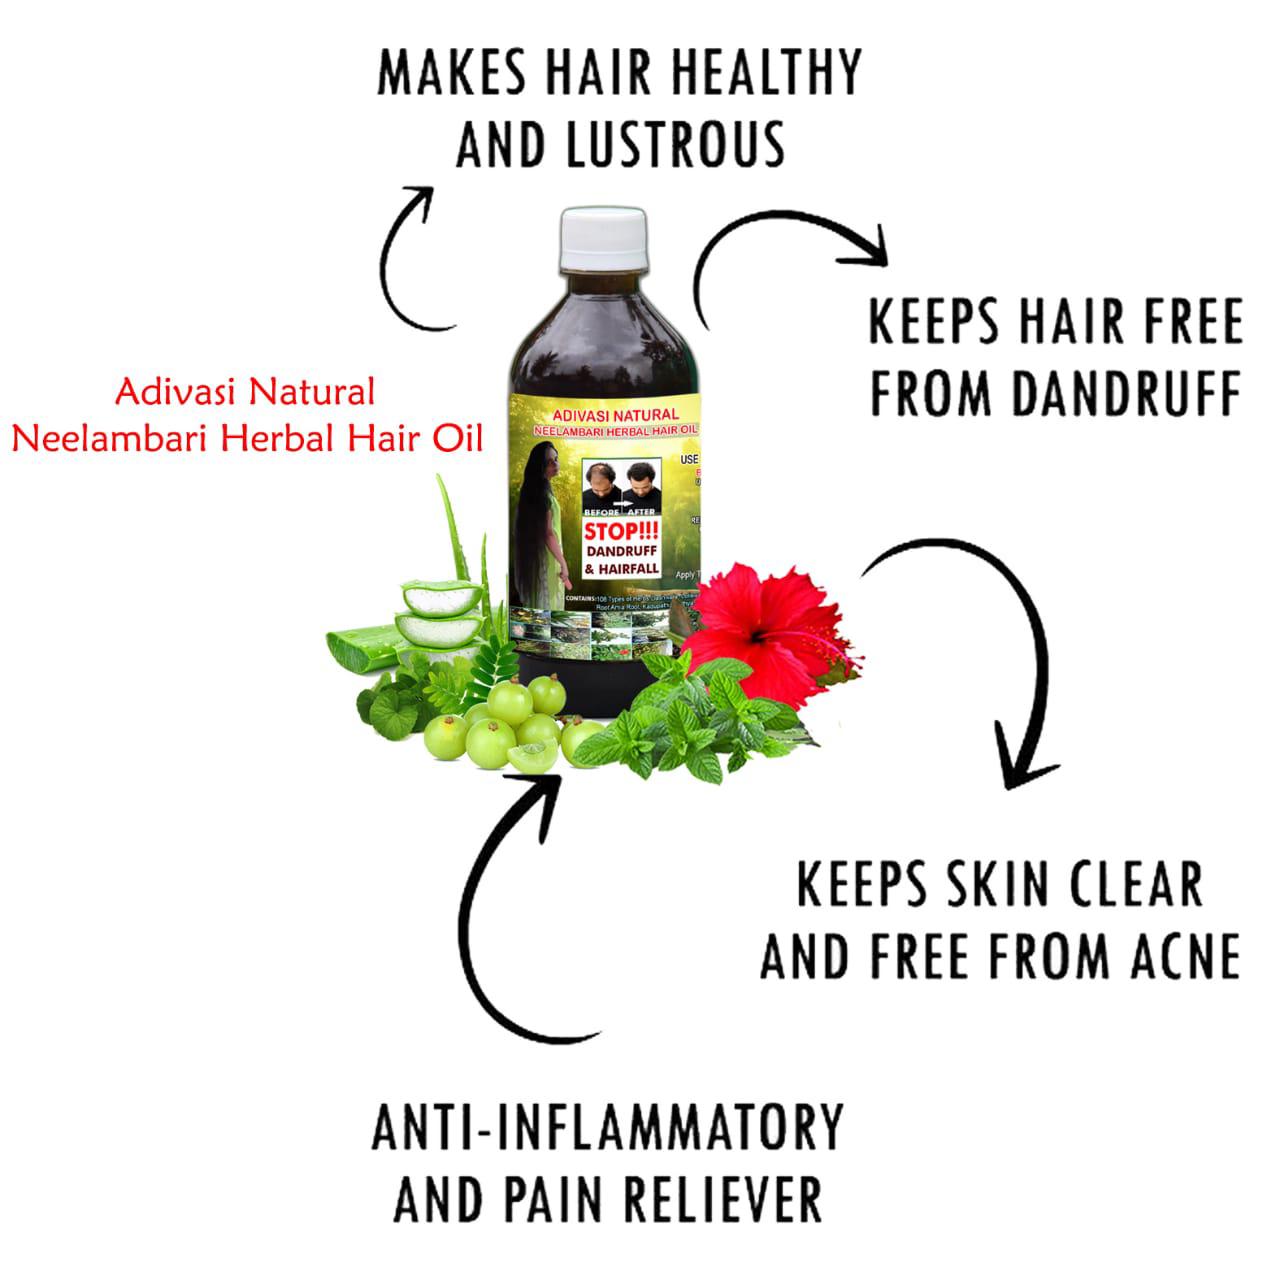 Adivasi herbal hair oil